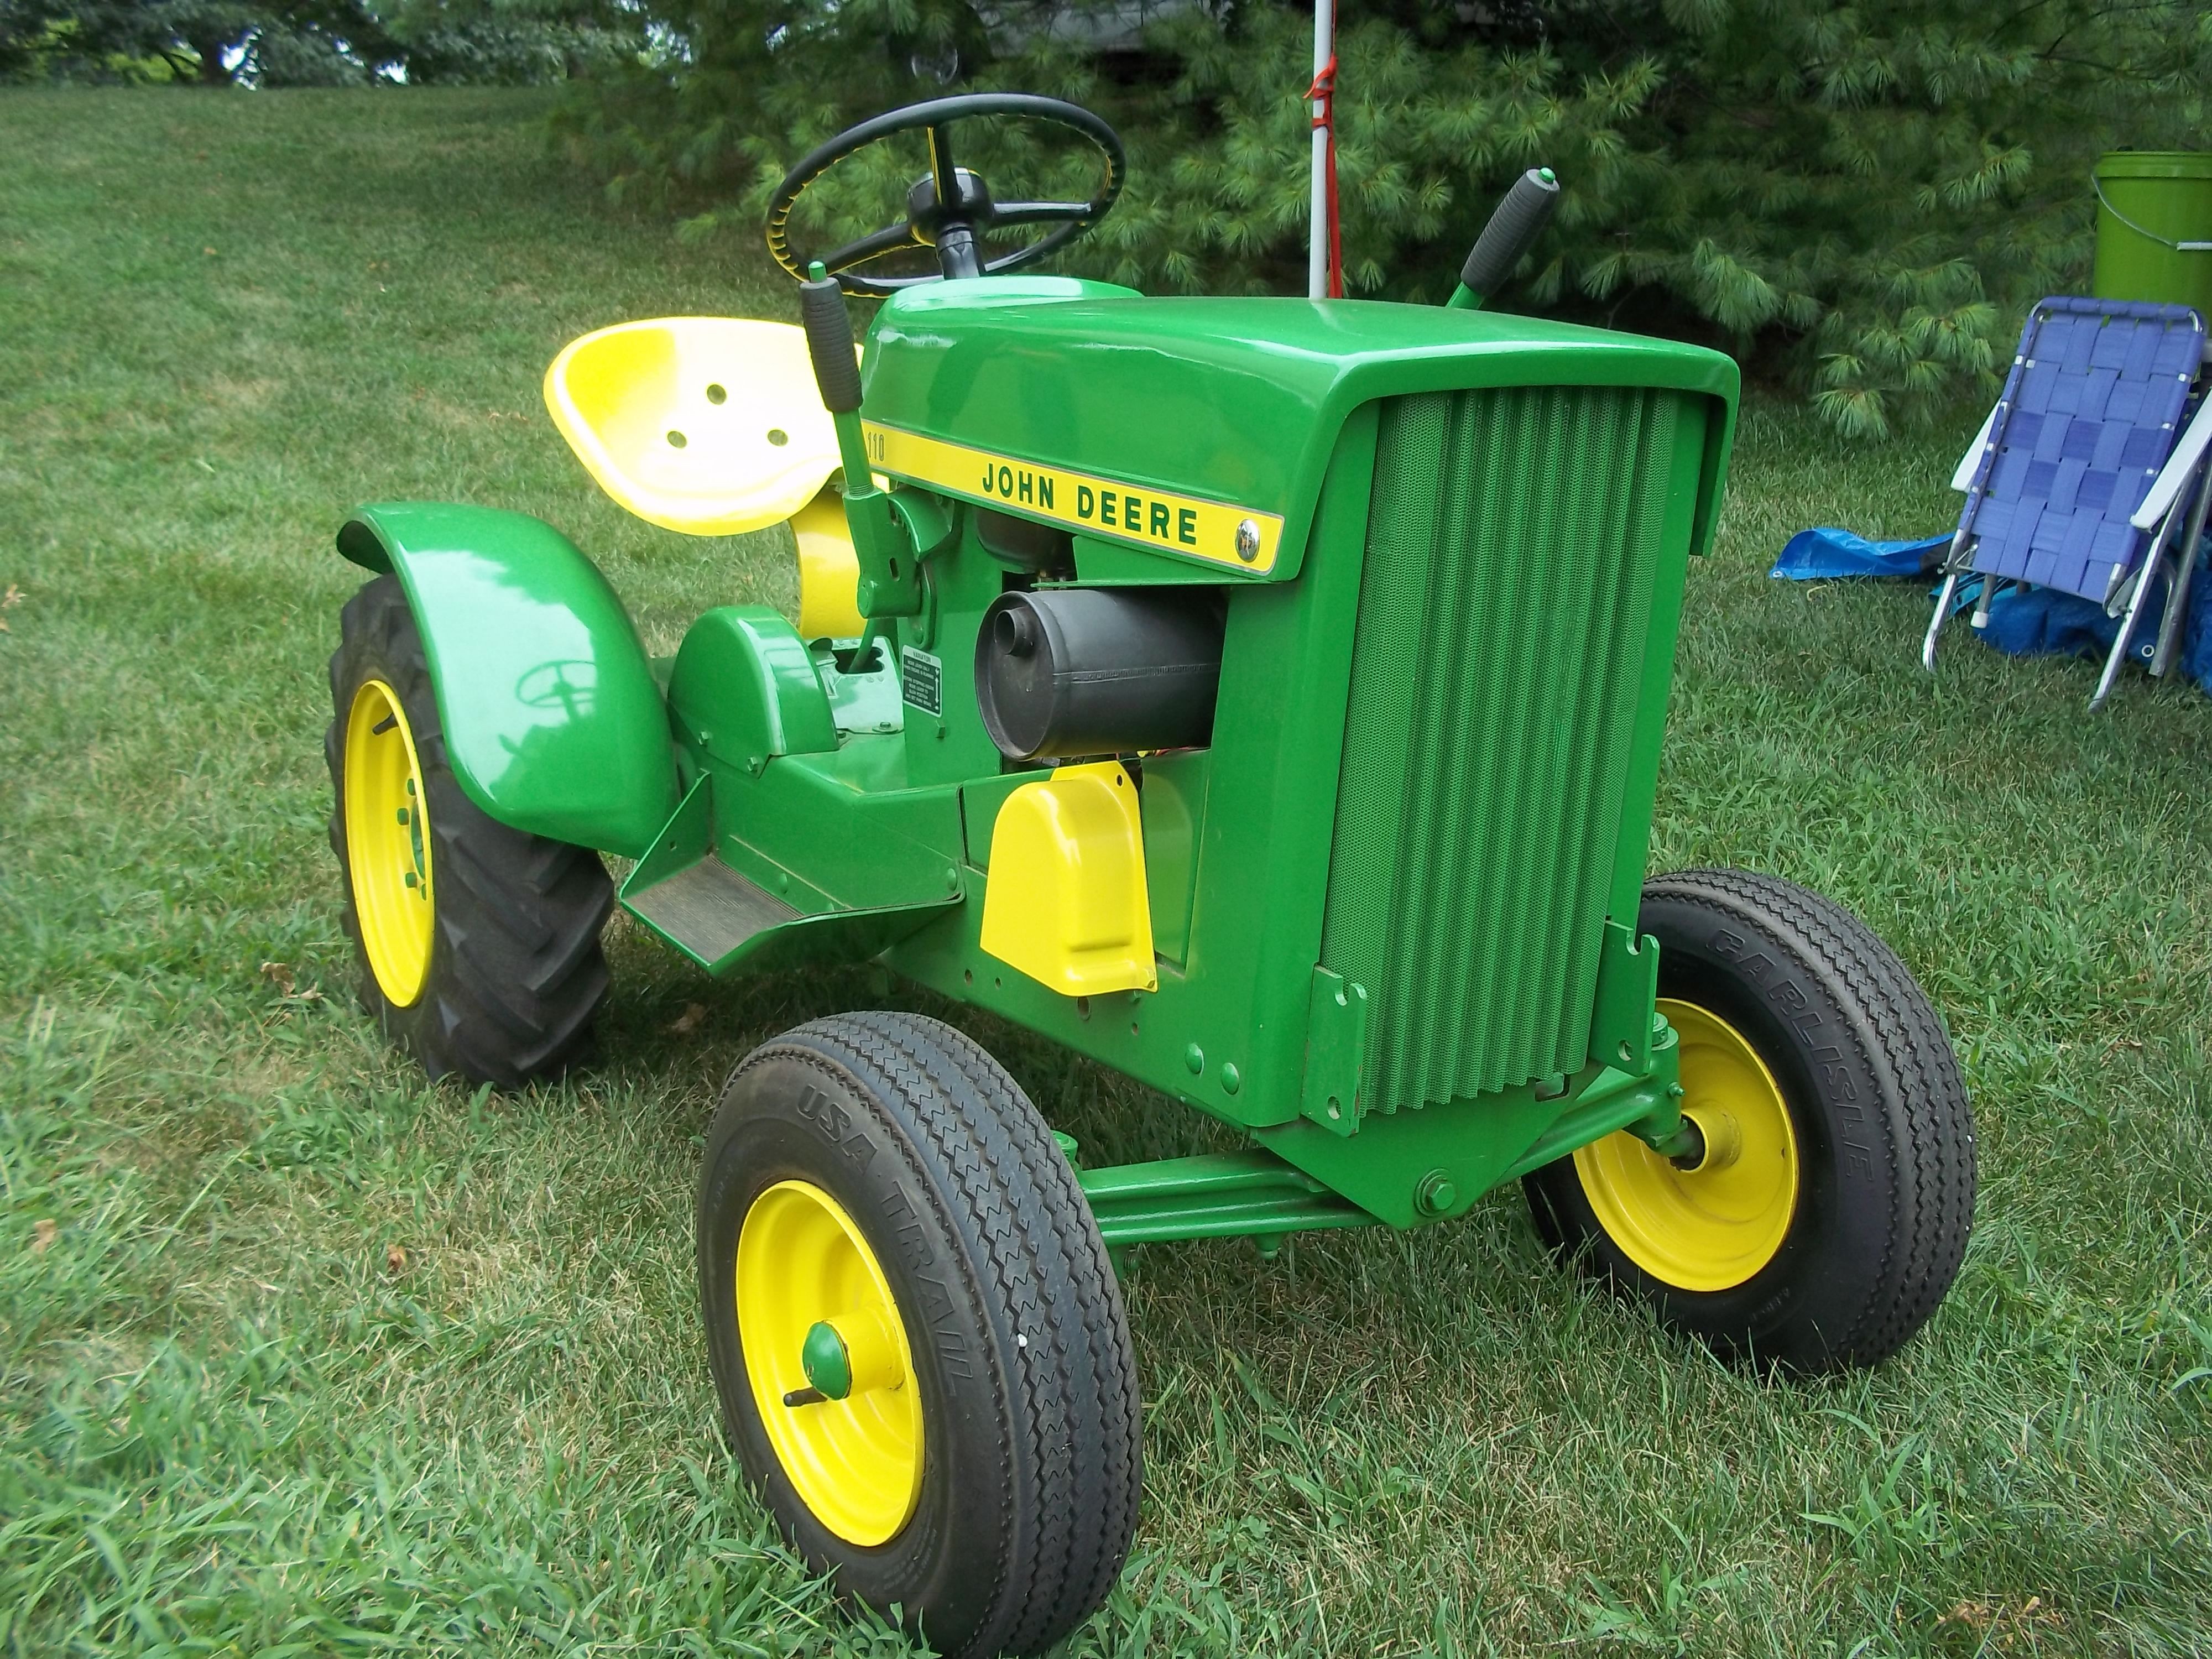 Nice John Deere 110 lawn & garden tractor